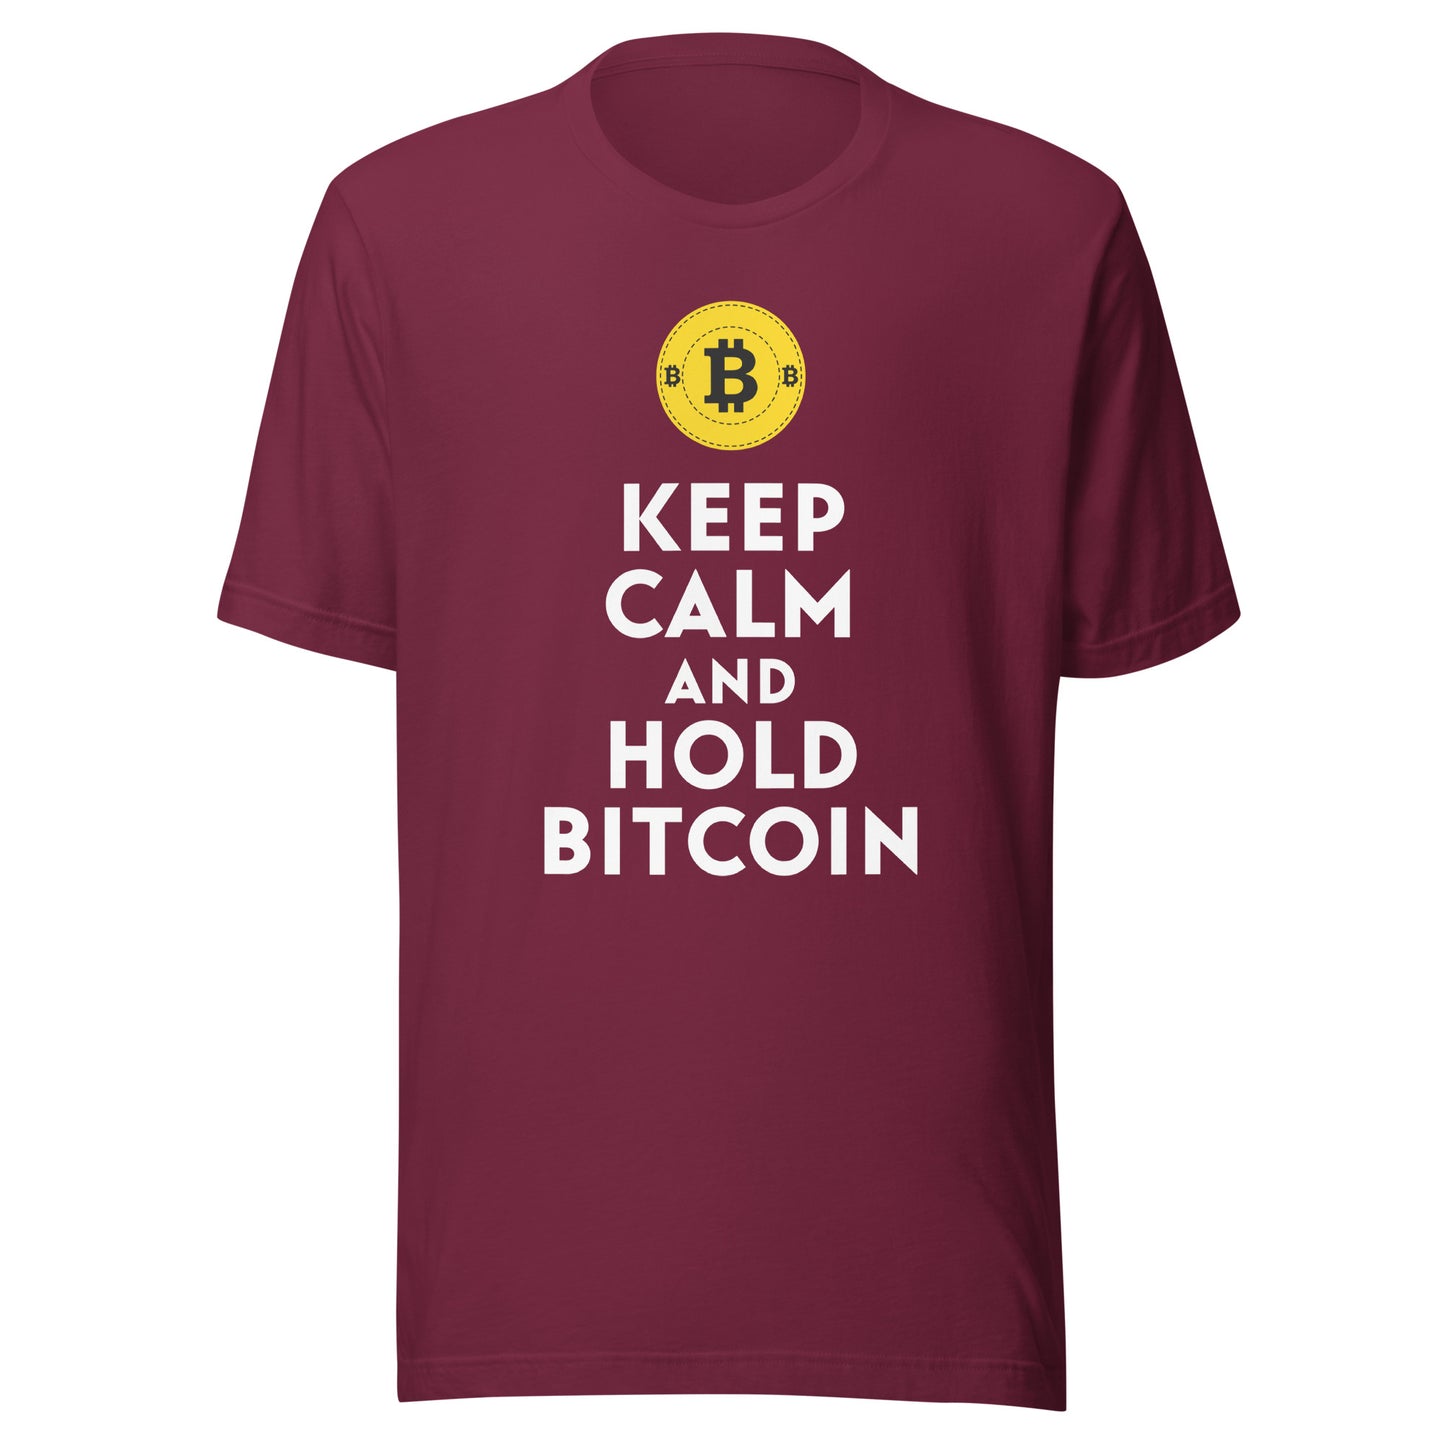 Hold Bitcoin Dark